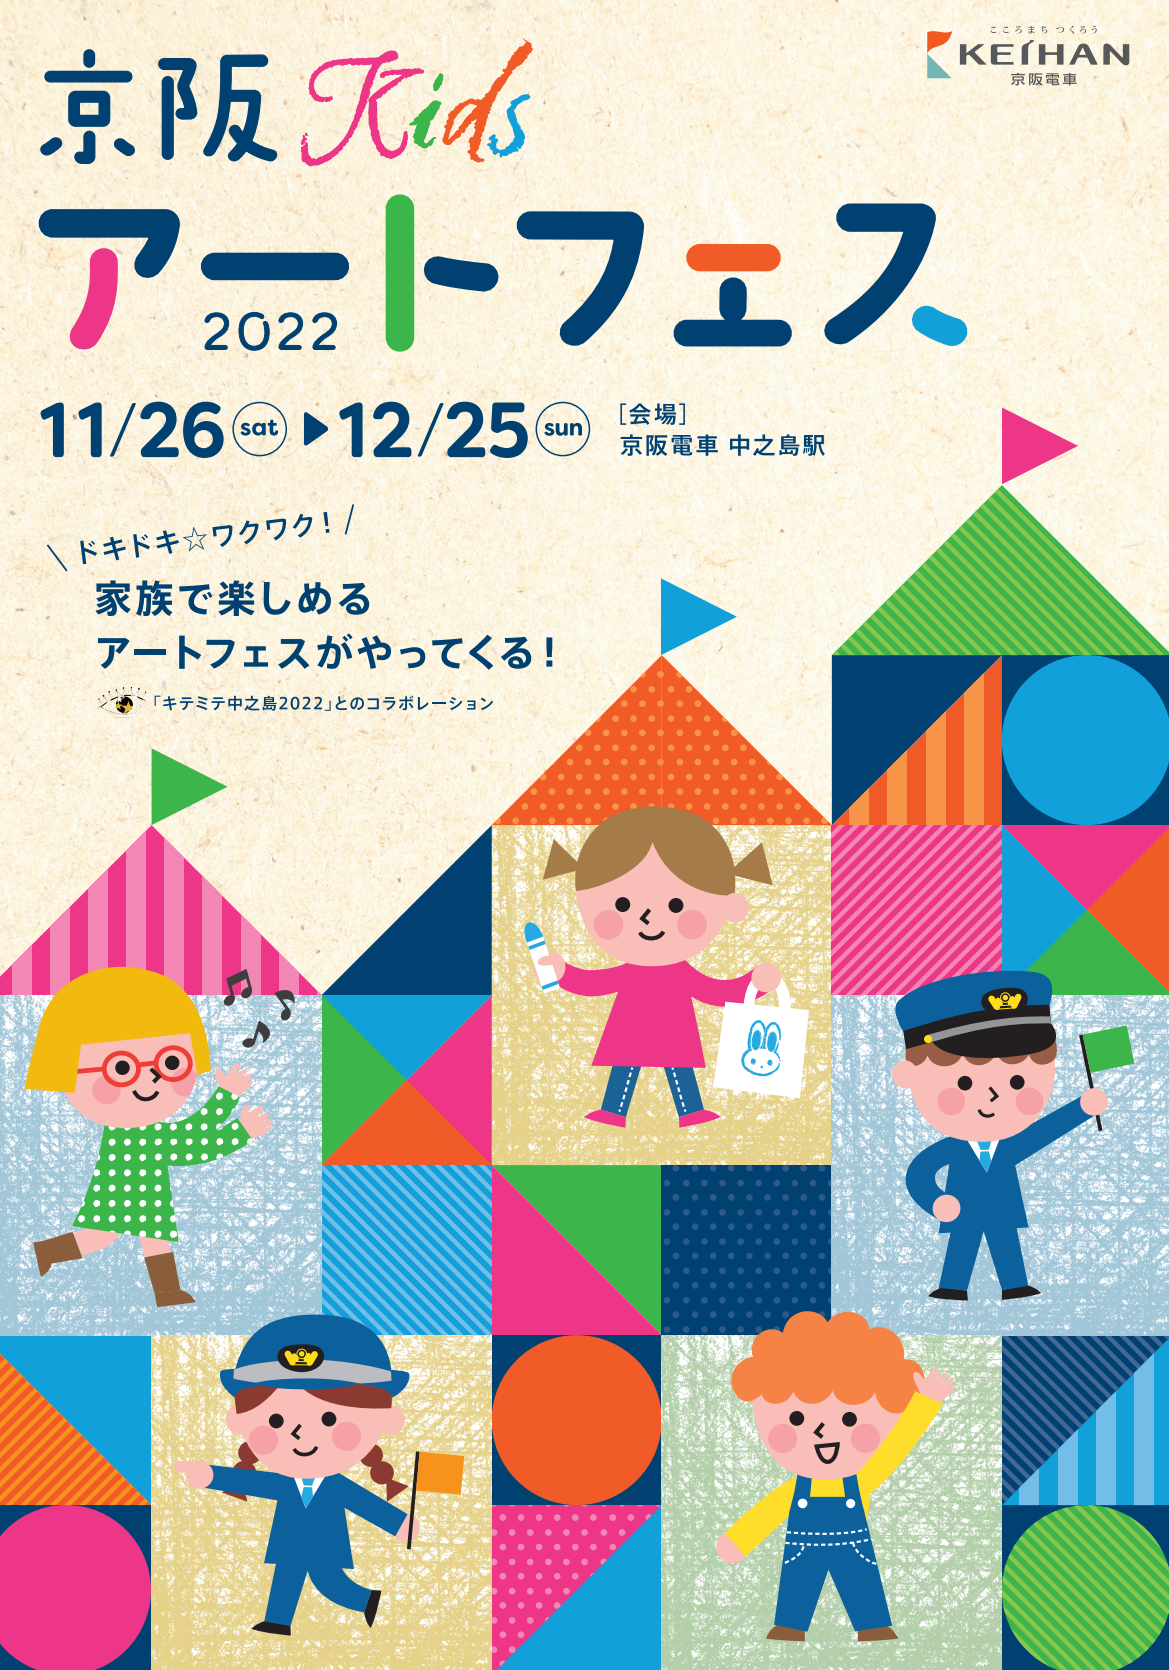 子どもたちと描く、ドキドキワクワクした未来
『京阪Kidsアートフェス2022』を
11月26日(土)から12月25日(日)まで開催します！